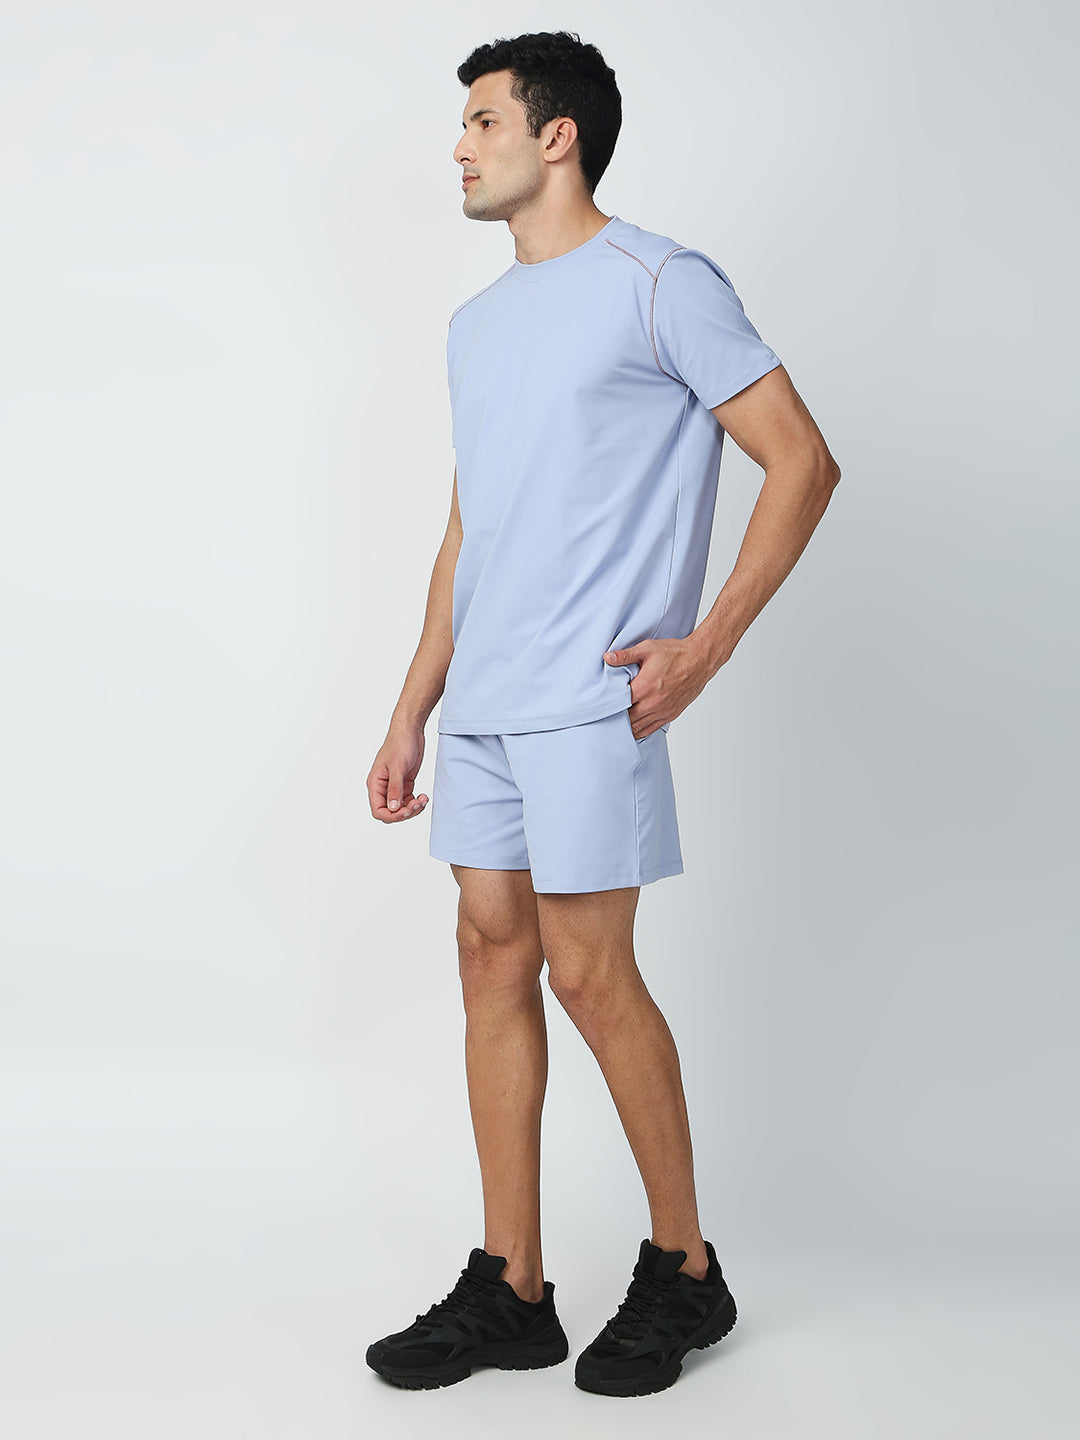 Buy Blamblack Men's Powder Blue Color GYM Wear Plain Co-ords Set